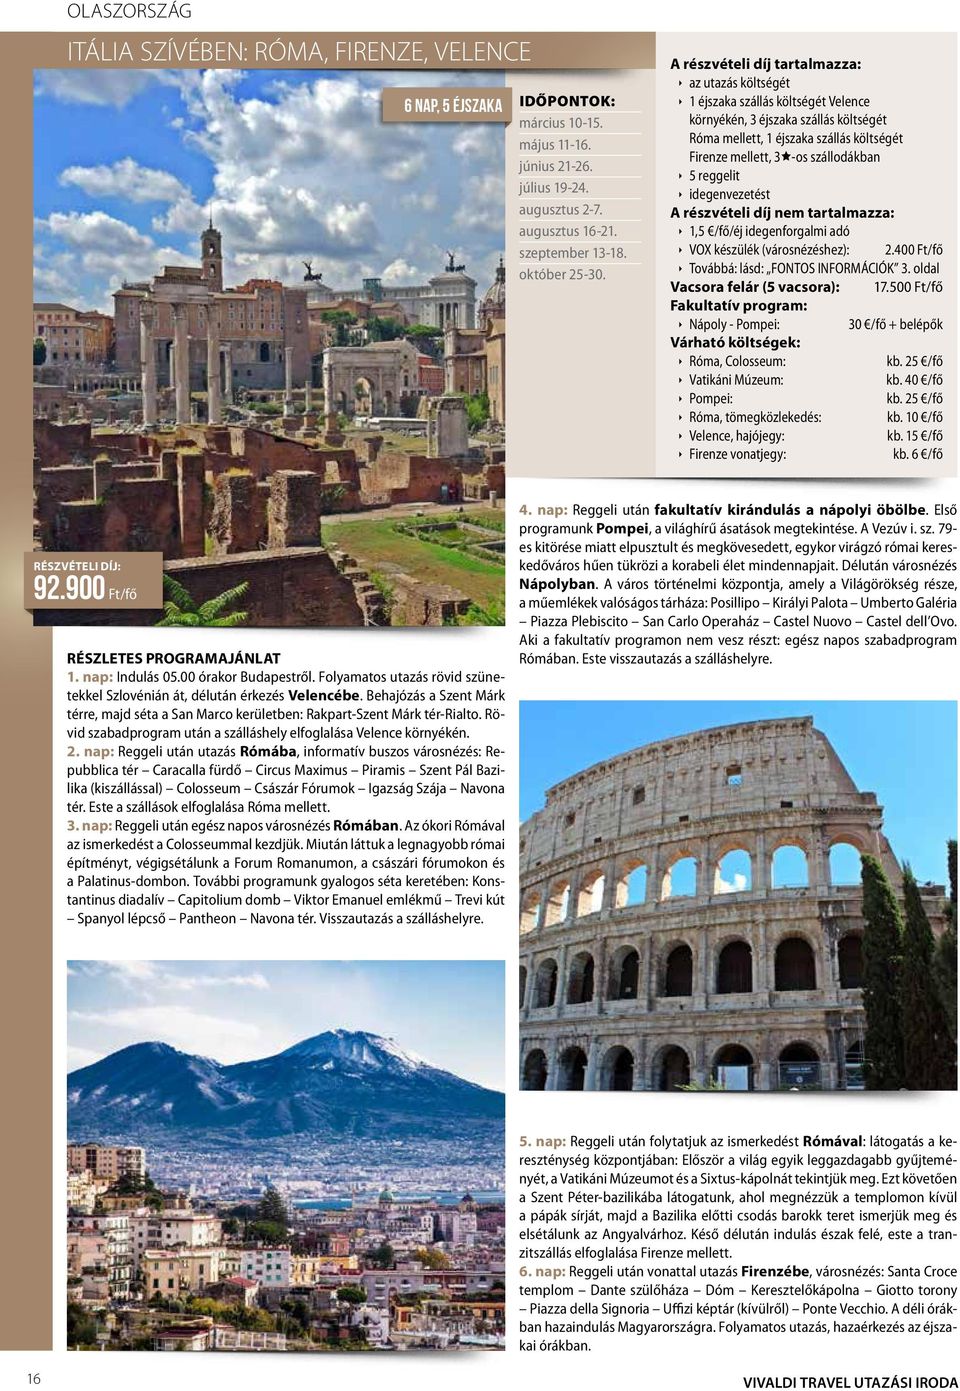 készülék (városnézéshez): 2.400 Ft/fő Továbbá: lásd: FONTOS INFORMÁCIÓK 3. oldal Vacsora felár (5 vacsora): 17.500 Ft/fő Fakultatív program: Nápoly - Pompei: 30 /fő + belépők Róma, Colosseum: kb.